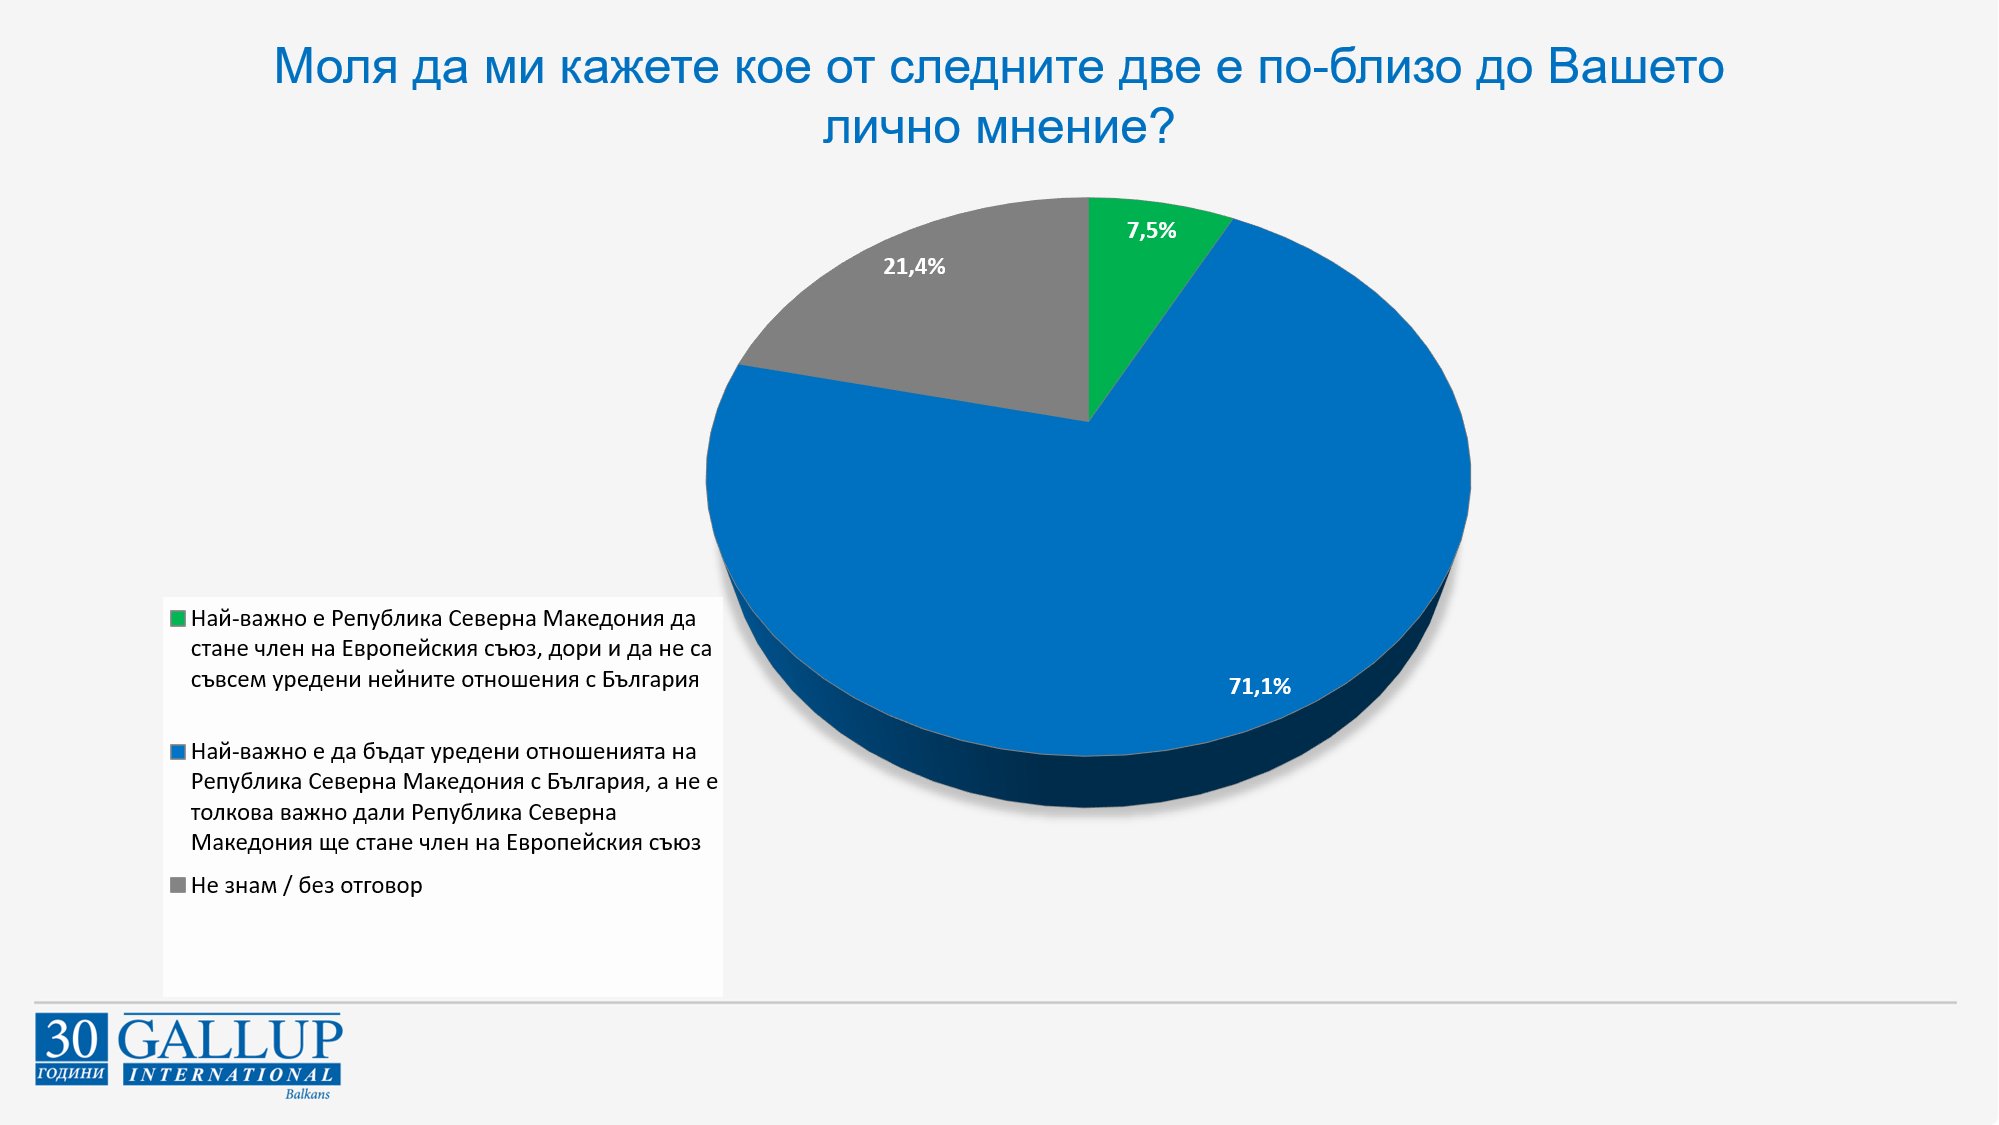 71,1% от българите приемат, че най-важно е да бъдат уредени